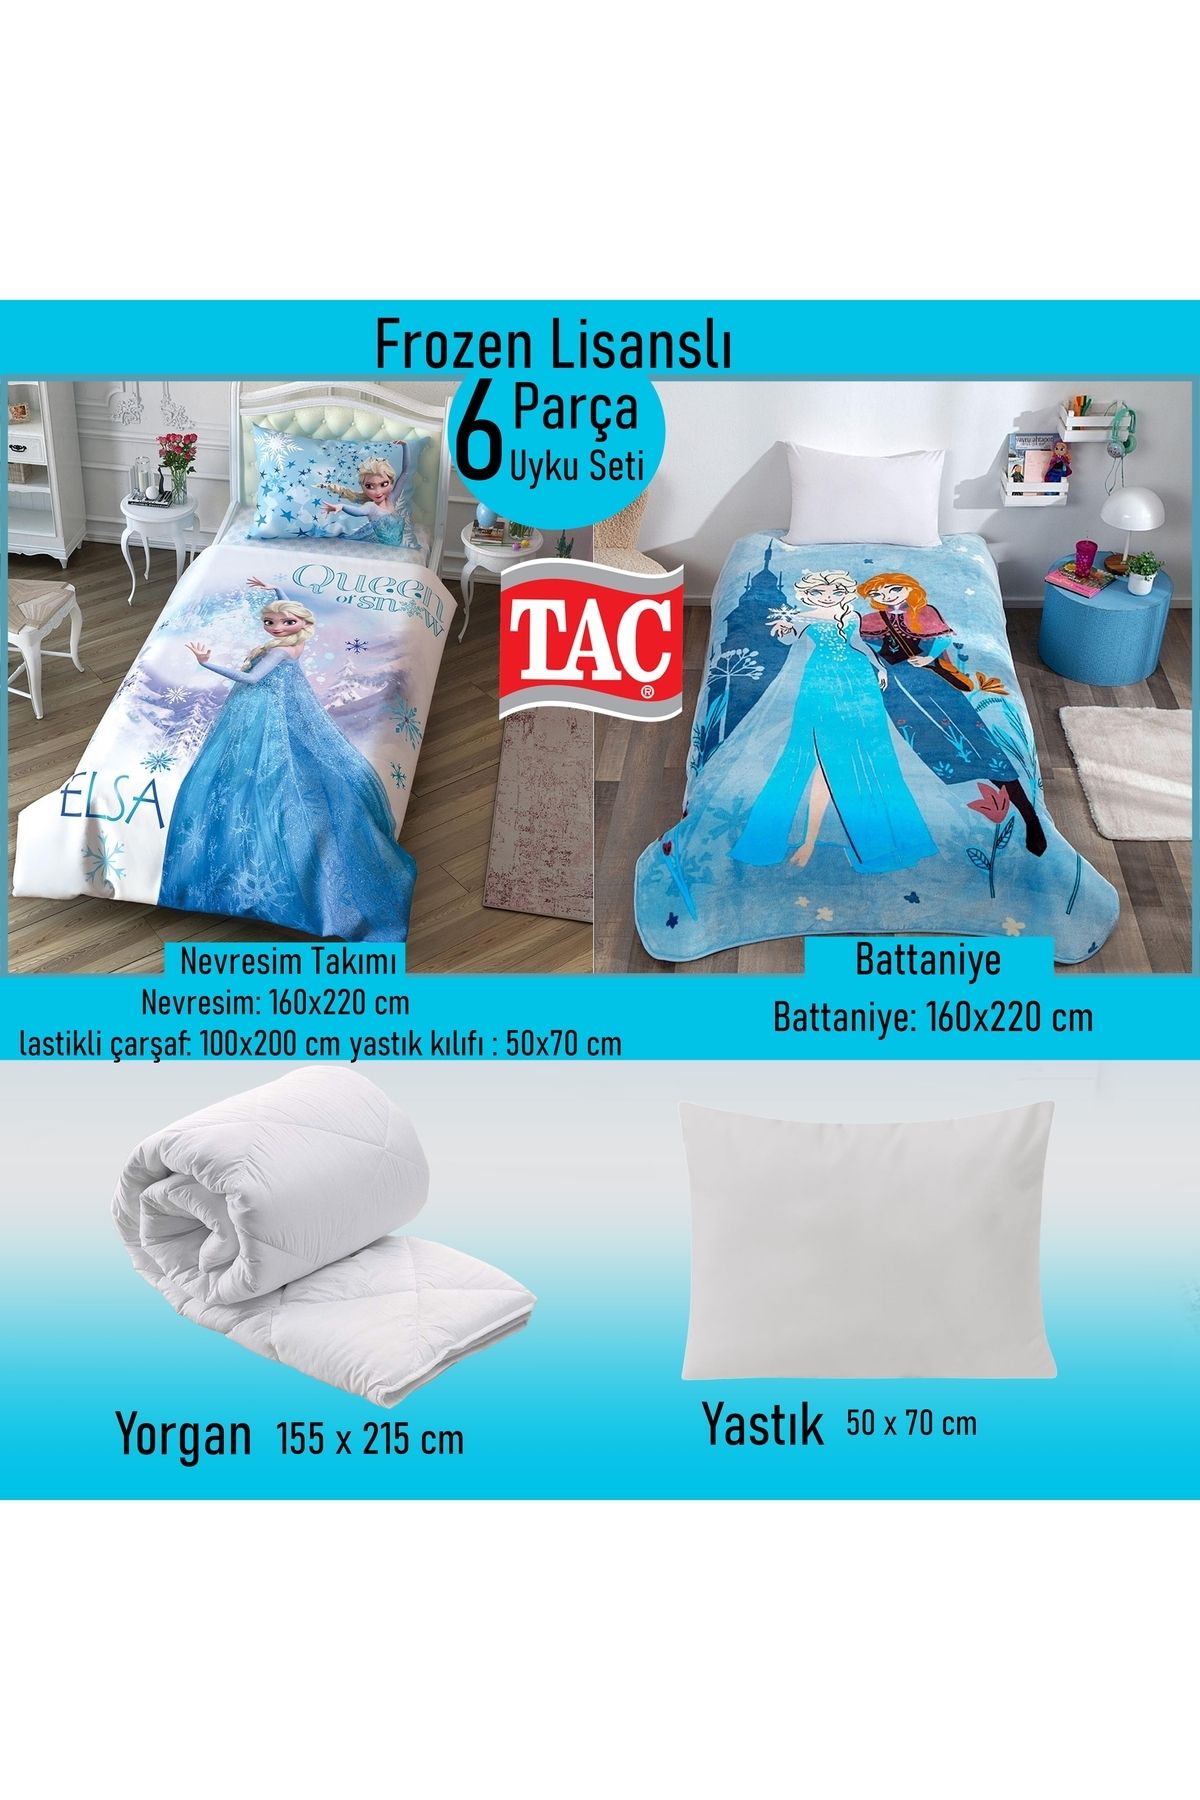 Taç Frozen Lisanslı 6 Parça Uyku Seti Yastık Hediyeli - Nevresim+Battaniye+Yorgan